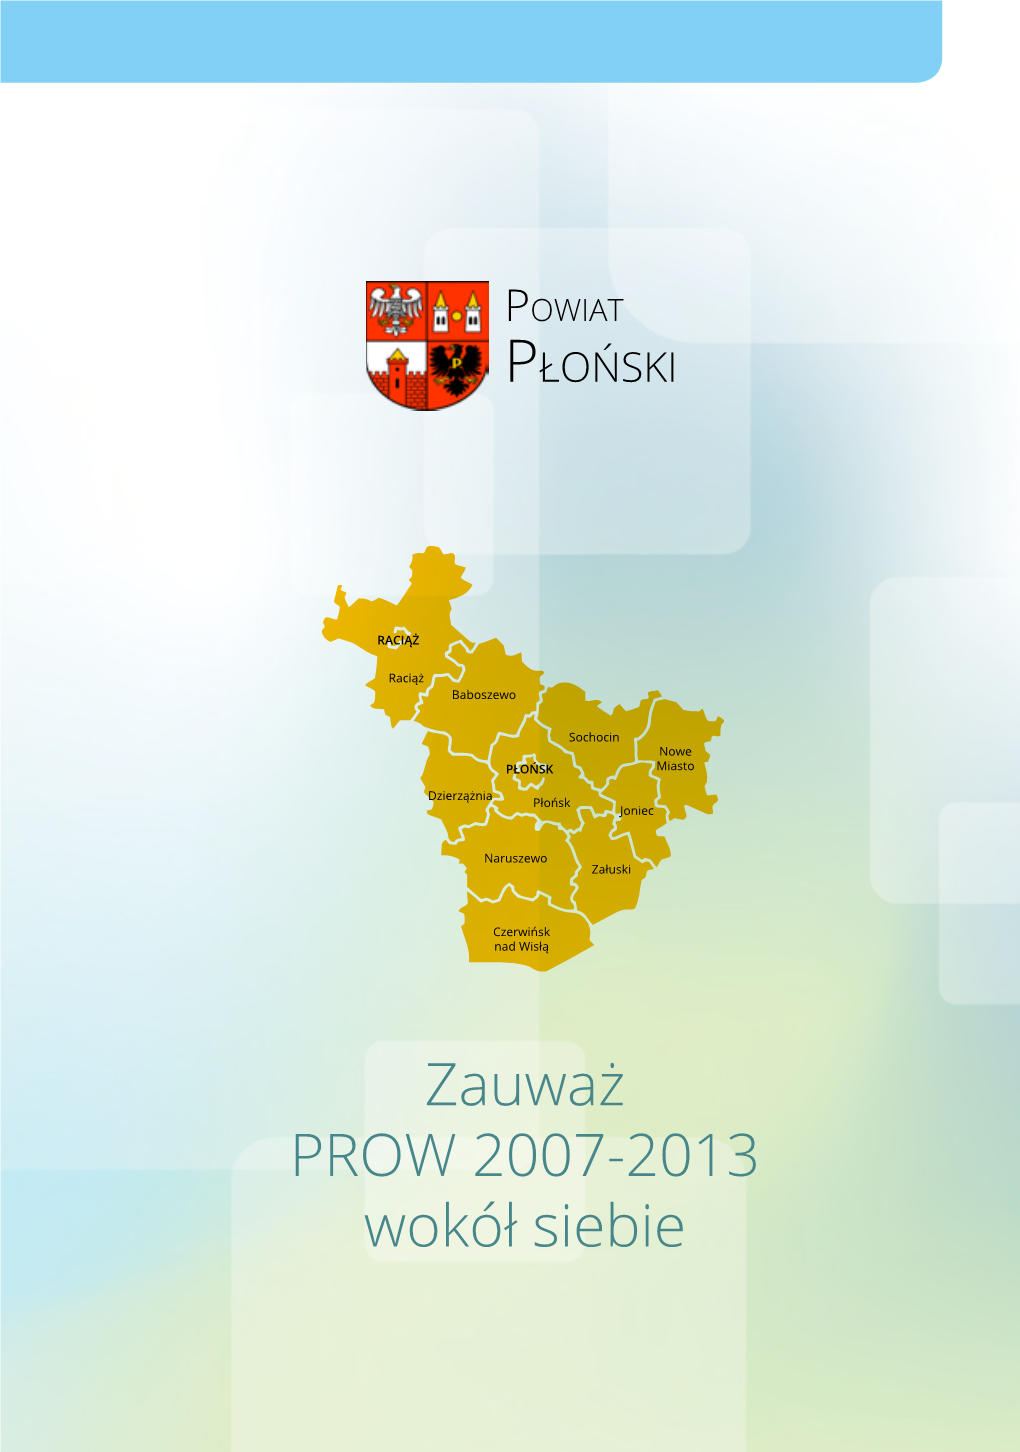 Zauważ PROW 2007-2013 Wokół Siebie Powiat PŁOŃSKI Szanowni Państwo